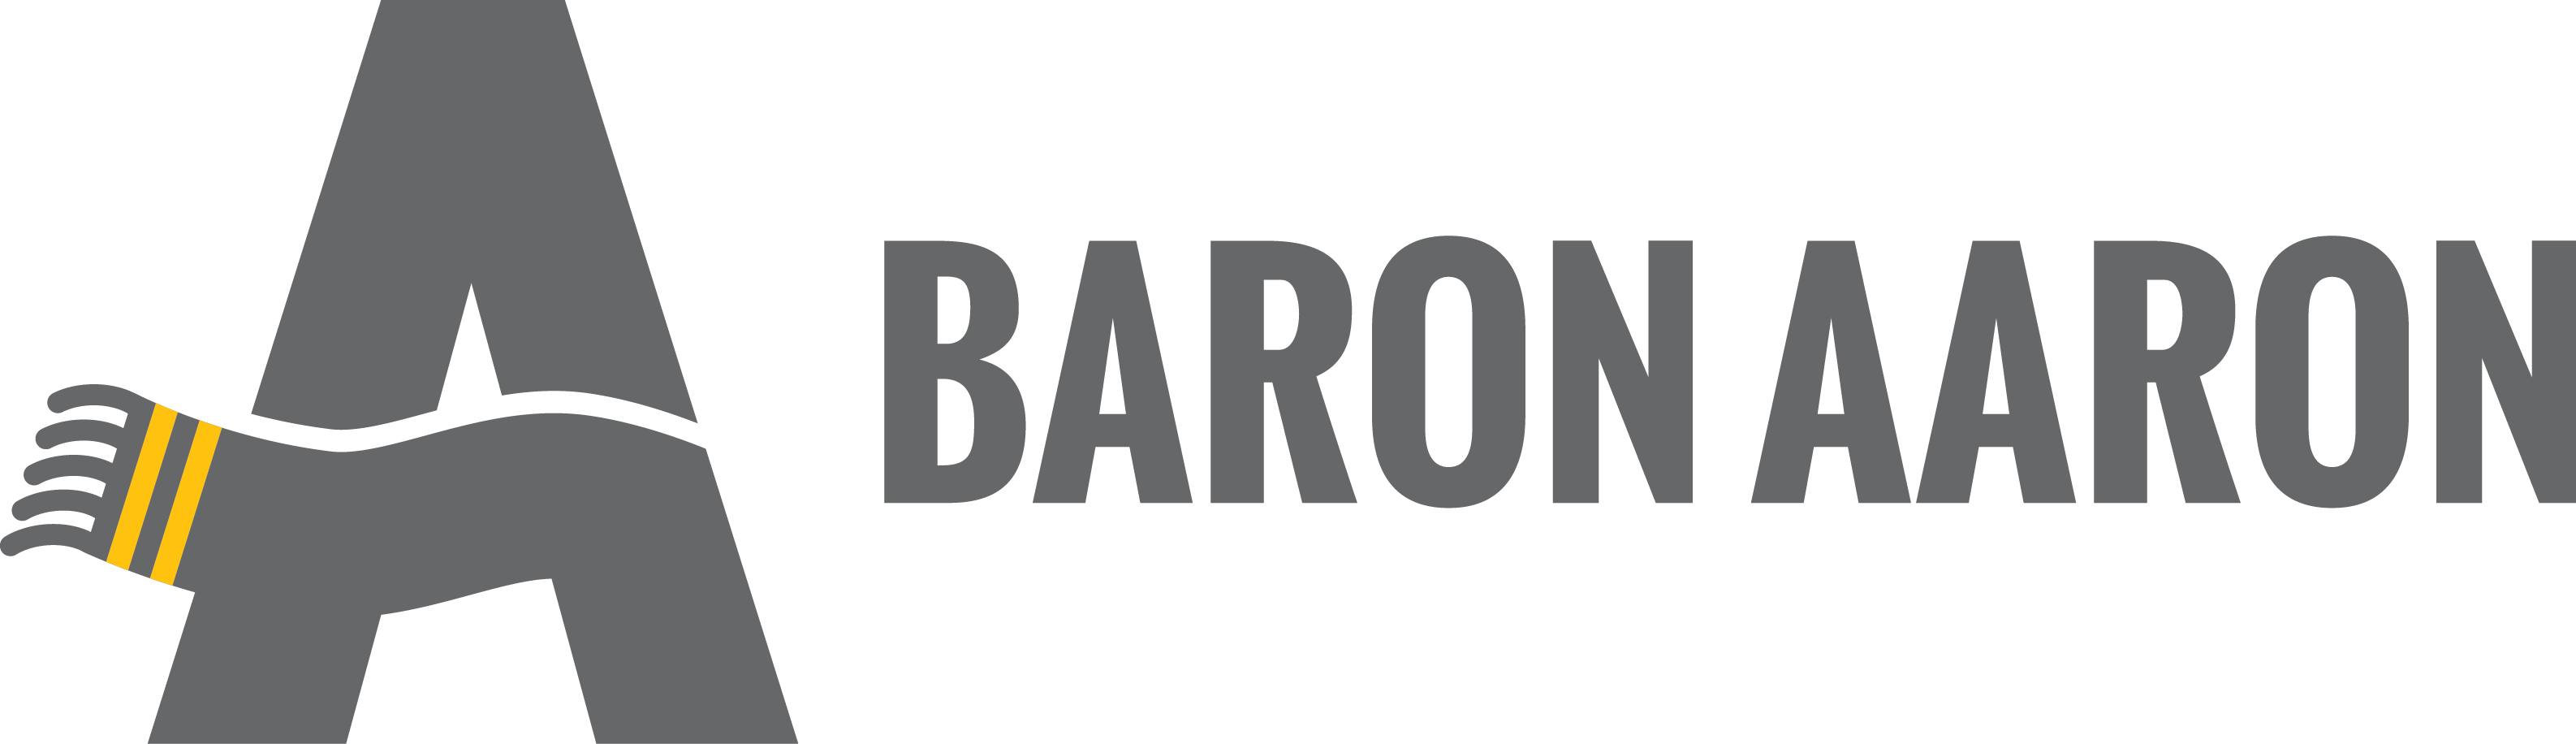 Baron Aaron